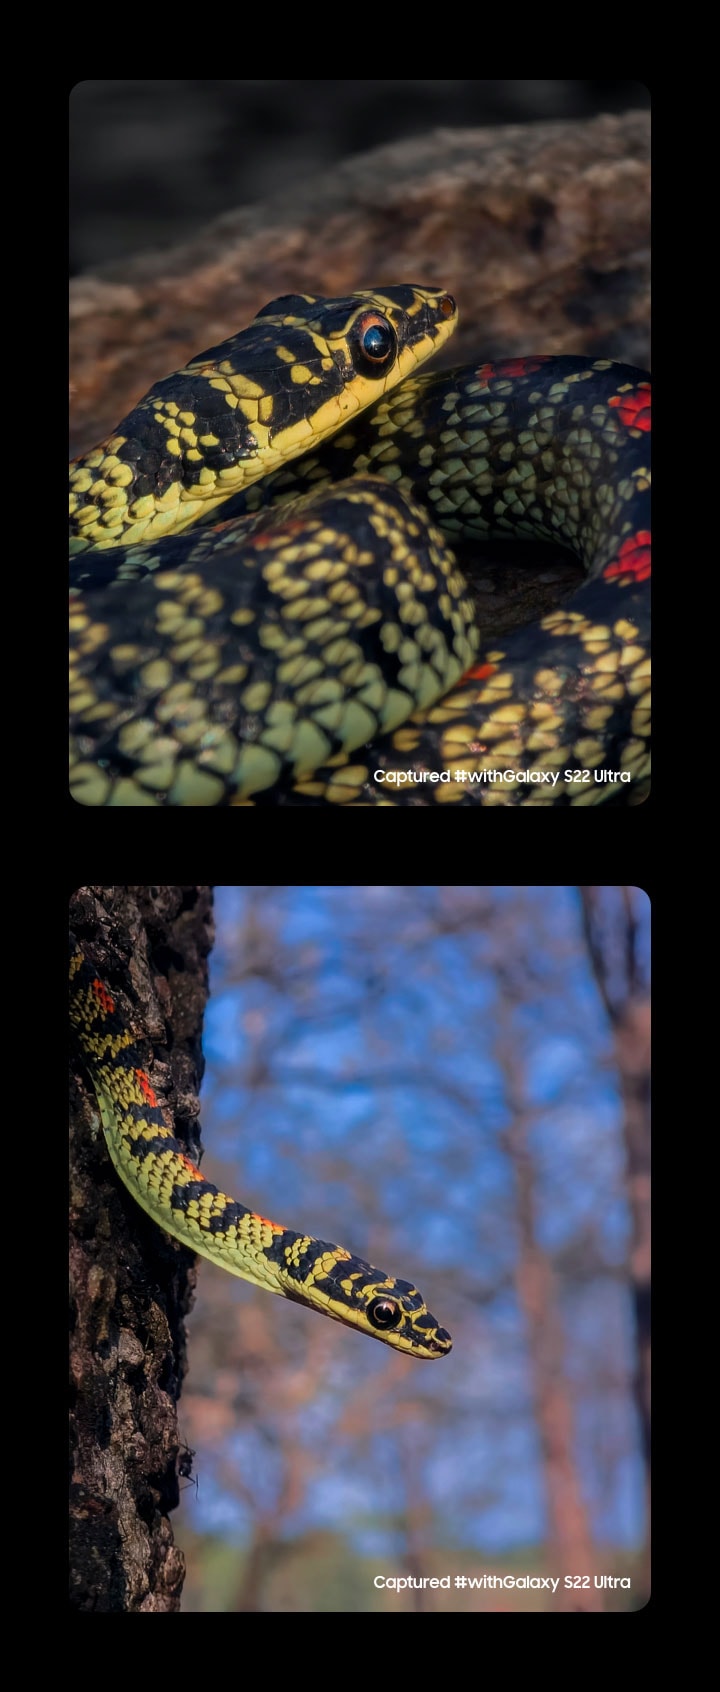 Deux photos côte à côte d'un serpent prises avec le Galaxy S22 Ultra. Capturé #withGalaxy S22 Ultra